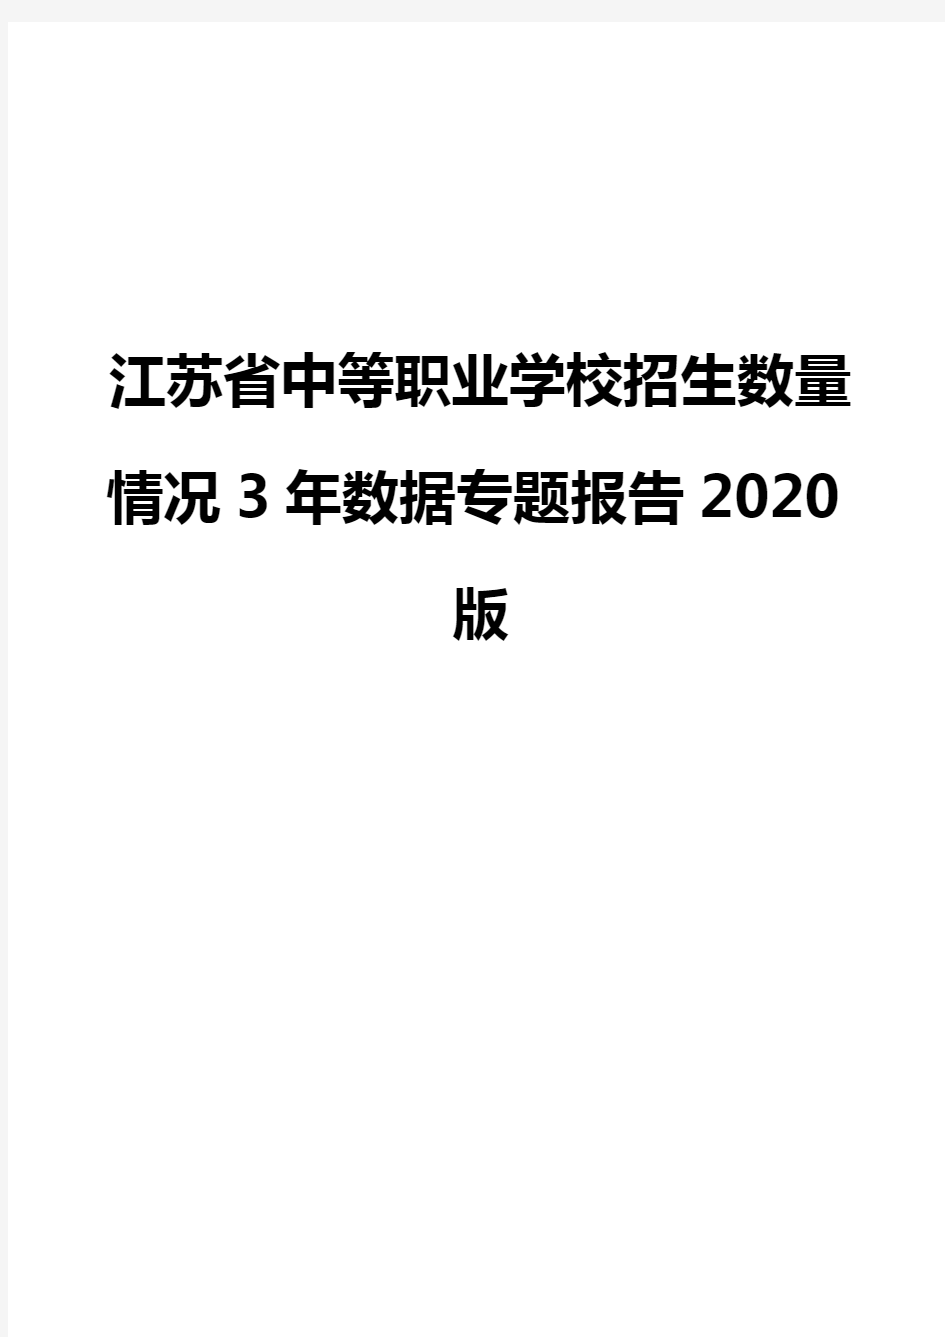 江苏省中等职业学校招生数量情况3年数据专题报告2020版